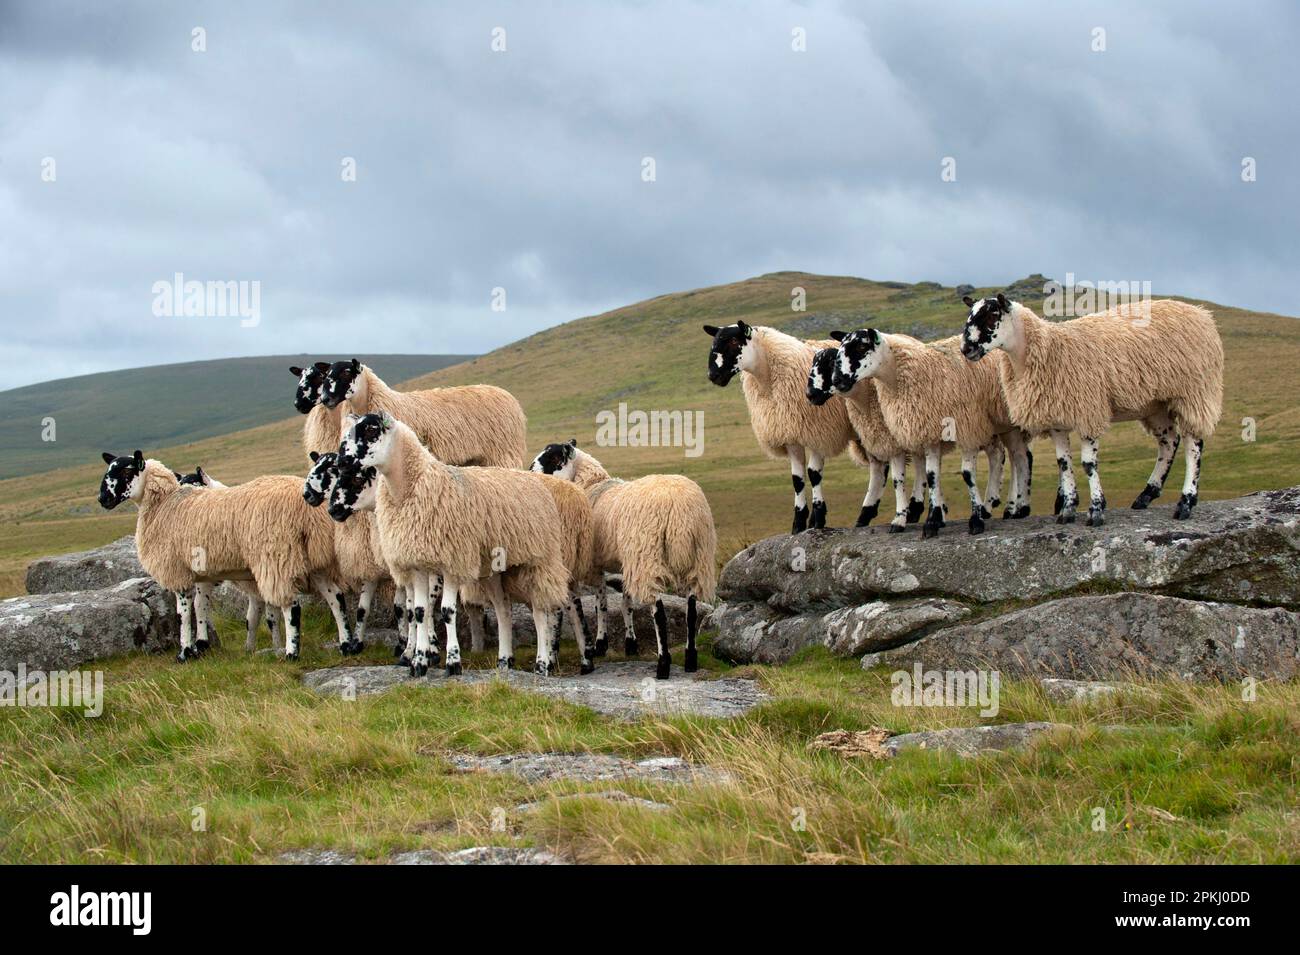 Moutons domestiques, agneaux de mules, prêts pour les ventes d'automne, affluent debout sur les landes, Dartmoor, Devon, Angleterre, Royaume-Uni Banque D'Images